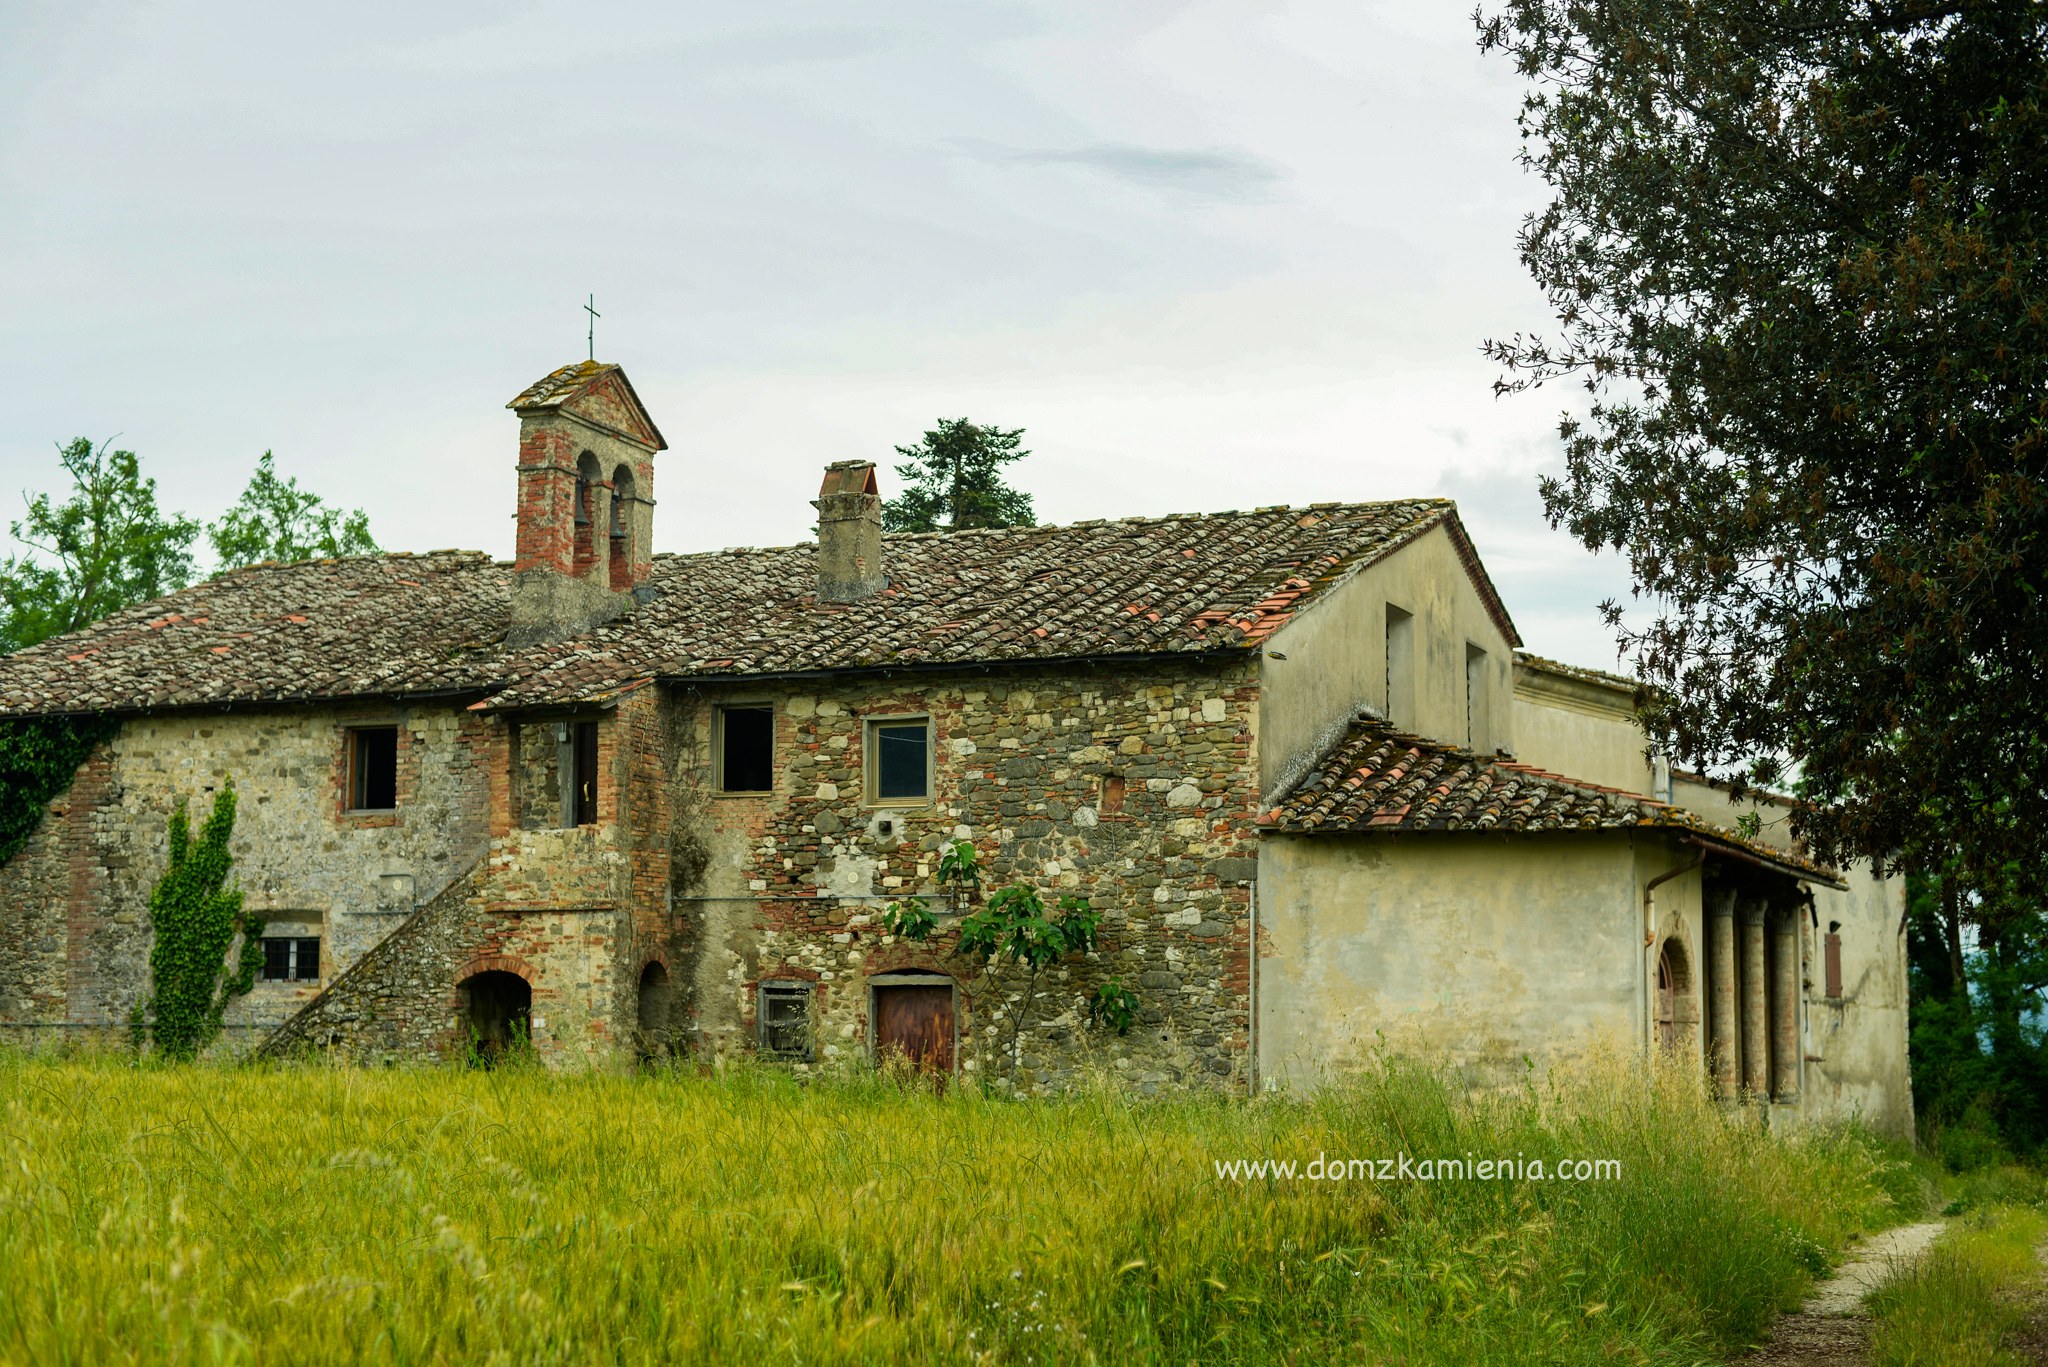 Dom z Kamienia Mugello, nieznany region Toskanii